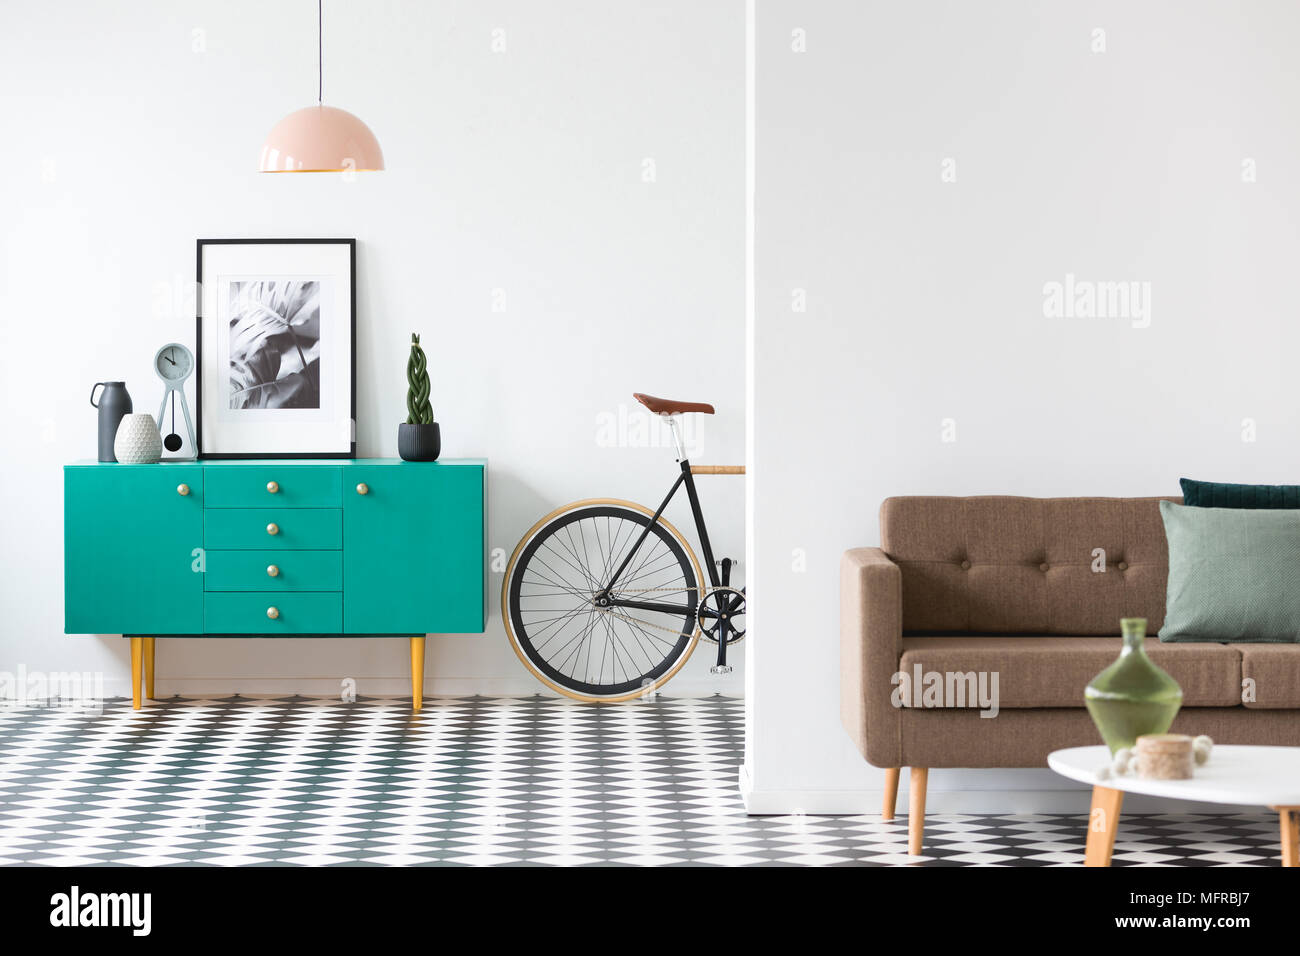 Rosa Lampe über Türkis Schrank mit Plakat in retro Wohnzimmer Einrichtung mit Sofa und Bike Stockfoto